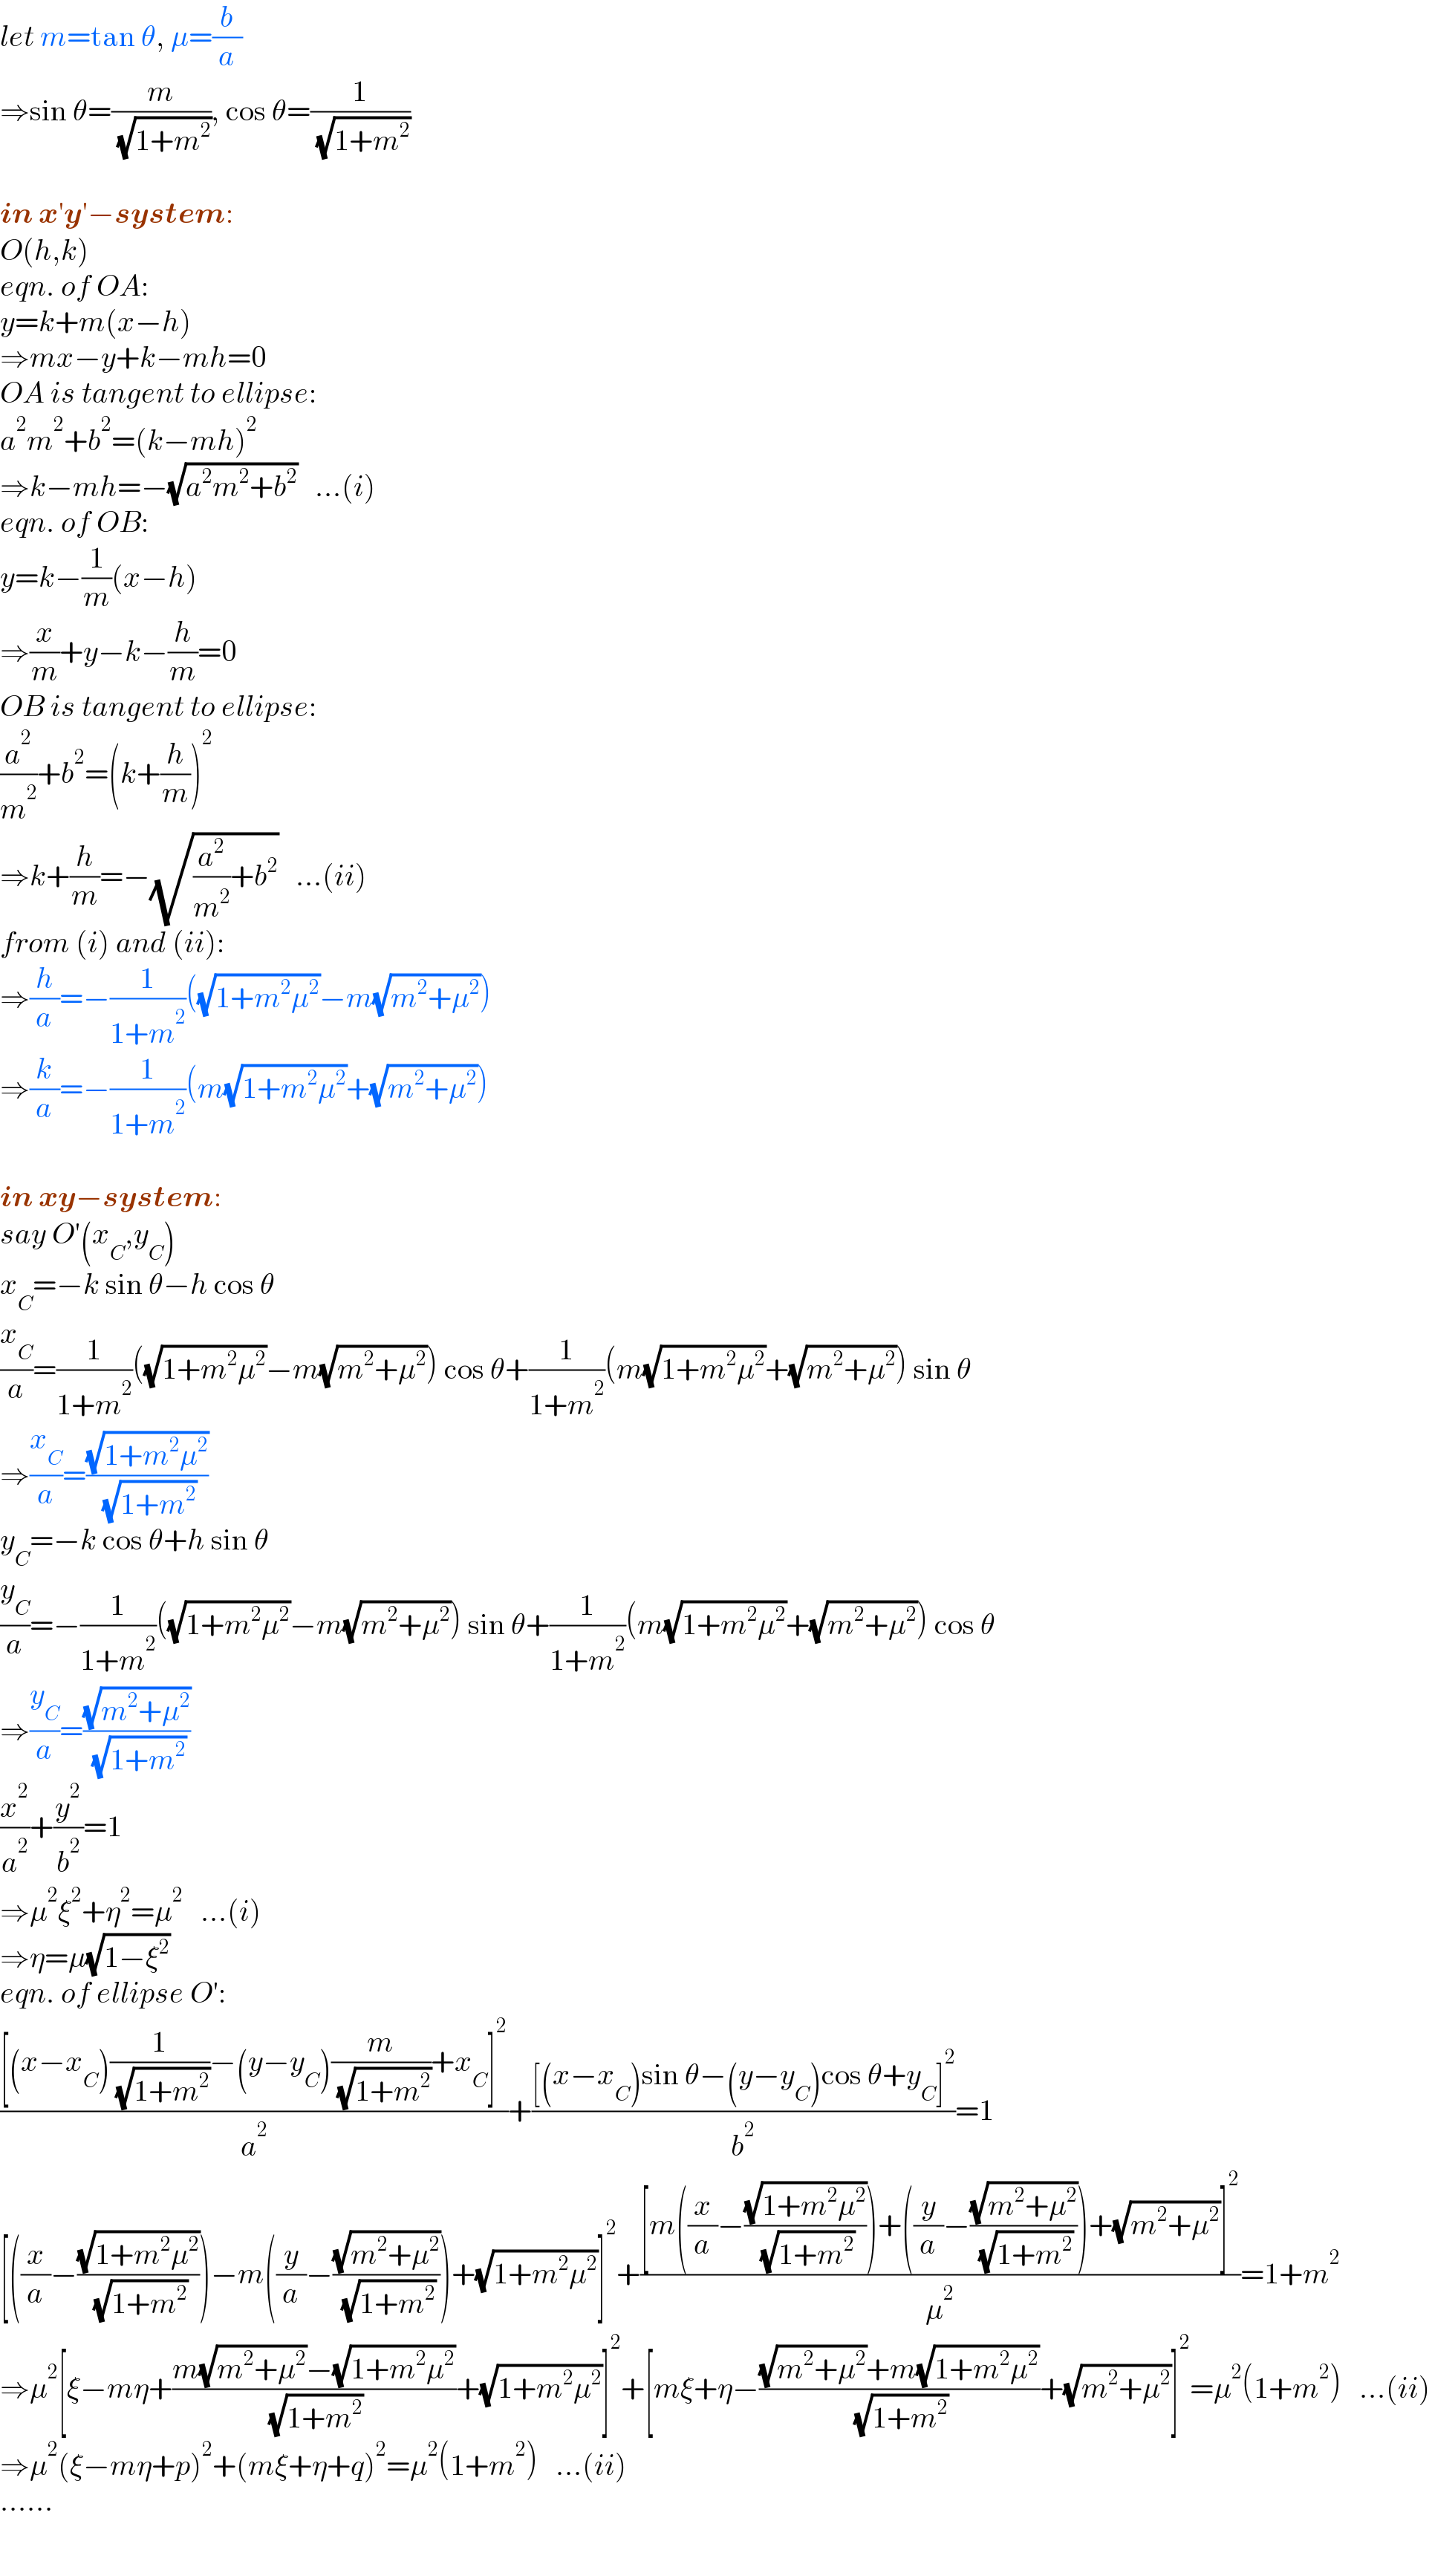 let m=tan θ, μ=(b/a)  ⇒sin θ=(m/( (√(1+m^2 )))), cos θ=(1/( (√(1+m^2 ))))    in x′y′−system:  O(h,k)  eqn. of OA:  y=k+m(x−h)  ⇒mx−y+k−mh=0  OA is tangent to ellipse:  a^2 m^2 +b^2 =(k−mh)^2      ⇒k−mh=−(√(a^2 m^2 +b^2 ))   ...(i)  eqn. of OB:  y=k−(1/m)(x−h)  ⇒(x/m)+y−k−(h/m)=0  OB is tangent to ellipse:  (a^2 /m^2 )+b^2 =(k+(h/m))^2   ⇒k+(h/m)=−(√((a^2 /m^2 )+b^2 ))   ...(ii)  from (i) and (ii):  ⇒(h/a)=−(1/(1+m^2 ))((√(1+m^2 μ^2 ))−m(√(m^2 +μ^2 )))  ⇒(k/a)=−(1/(1+m^2 ))(m(√(1+m^2 μ^2 ))+(√(m^2 +μ^2 )))    in xy−system:  say O′(x_C ,y_C )  x_C =−k sin θ−h cos θ  (x_C /a)=(1/(1+m^2 ))((√(1+m^2 μ^2 ))−m(√(m^2 +μ^2 ))) cos θ+(1/(1+m^2 ))(m(√(1+m^2 μ^2 ))+(√(m^2 +μ^2 ))) sin θ  ⇒(x_C /a)=((√(1+m^2 μ^2 ))/( (√(1+m^2 ))))  y_C =−k cos θ+h sin θ  (y_C /a)=−(1/(1+m^2 ))((√(1+m^2 μ^2 ))−m(√(m^2 +μ^2 ))) sin θ+(1/(1+m^2 ))(m(√(1+m^2 μ^2 ))+(√(m^2 +μ^2 ))) cos θ  ⇒(y_C /a)=((√(m^2 +μ^2 ))/( (√(1+m^2 ))))  (x^2 /a^2 )+(y^2 /b^2 )=1  ⇒μ^2 ξ^2 +η^2 =μ^2    ...(i)      ⇒η=μ(√(1−ξ^2 ))  eqn. of ellipse O′:  (([(x−x_C )(1/( (√(1+m^2 ))))−(y−y_C )(m/( (√(1+m^2 ))))+x_C ]^2 )/a^2 )+(([(x−x_C )sin θ−(y−y_C )cos θ+y_C ]^2 )/b^2 )=1  [((x/a)−((√(1+m^2 μ^2 ))/( (√(1+m^2 )))))−m((y/a)−((√(m^2 +μ^2 ))/( (√(1+m^2 )))))+(√(1+m^2 μ^2 ))]^2 +(([m((x/a)−((√(1+m^2 μ^2 ))/( (√(1+m^2 )))))+((y/a)−((√(m^2 +μ^2 ))/( (√(1+m^2 )))))+(√(m^2 +μ^2 ))]^2 )/μ^2 )=1+m^2   ⇒μ^2 [ξ−mη+((m(√(m^2 +μ^2 ))−(√(1+m^2 μ^2 )))/( (√(1+m^2 ))))+(√(1+m^2 μ^2 ))]^2 +[mξ+η−(((√(m^2 +μ^2 ))+m(√(1+m^2 μ^2 )))/( (√(1+m^2 ))))+(√(m^2 +μ^2 ))]^2 =μ^2 (1+m^2 )   ...(ii)  ⇒μ^2 (ξ−mη+p)^2 +(mξ+η+q)^2 =μ^2 (1+m^2 )   ...(ii)  ......  